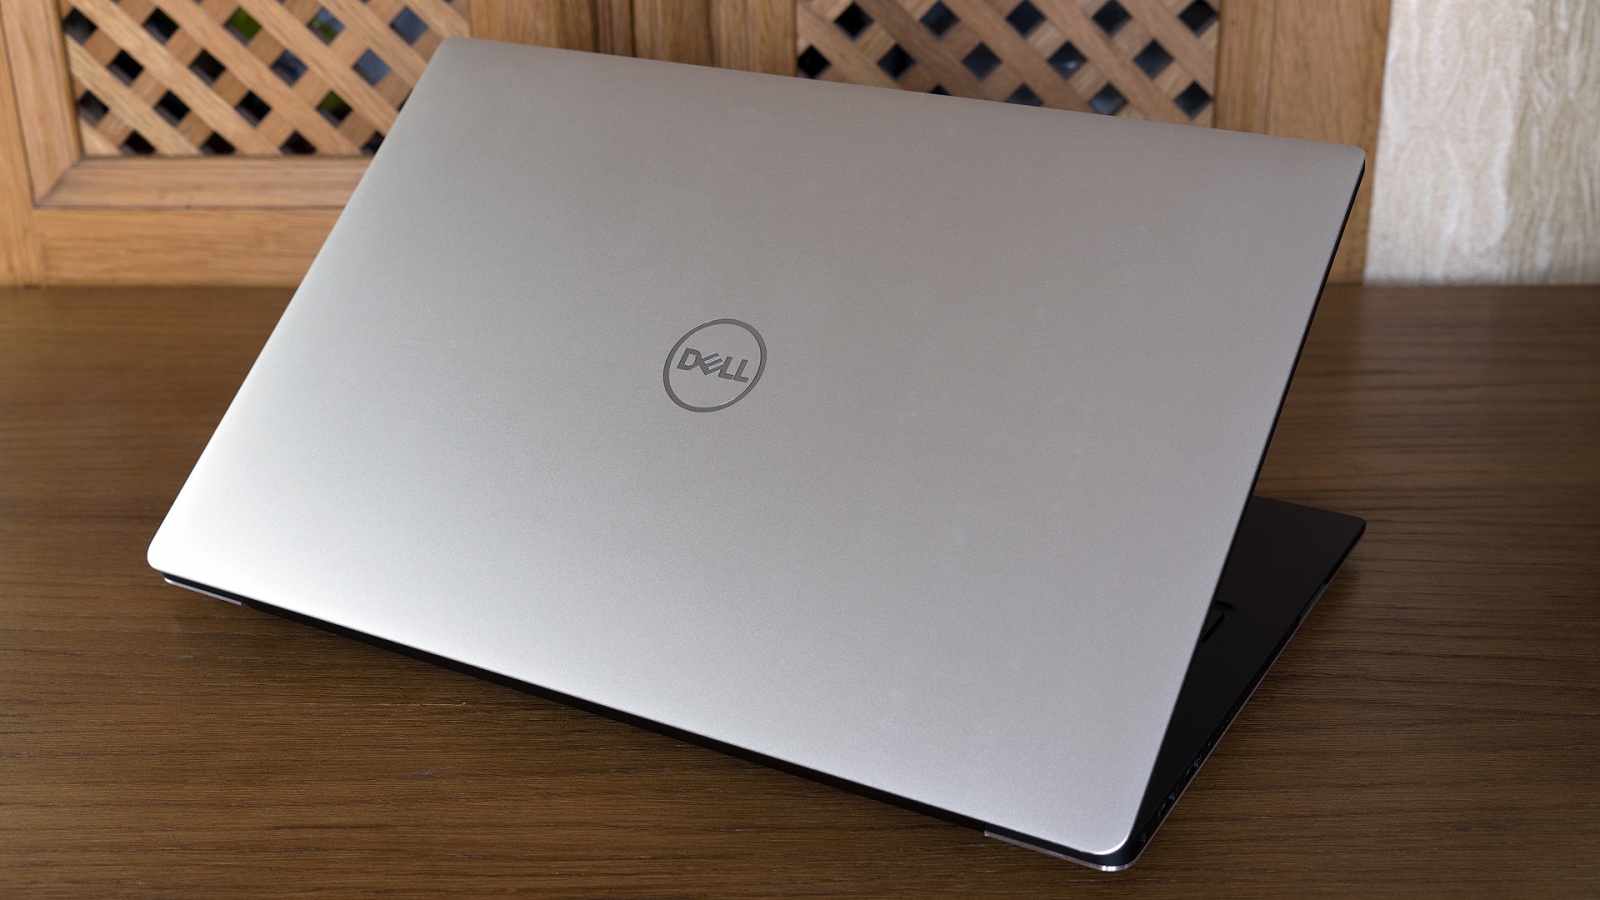 Обзор ноутбука Dell XPS 13 9370: лёгкий, красивый, быстрый - 2